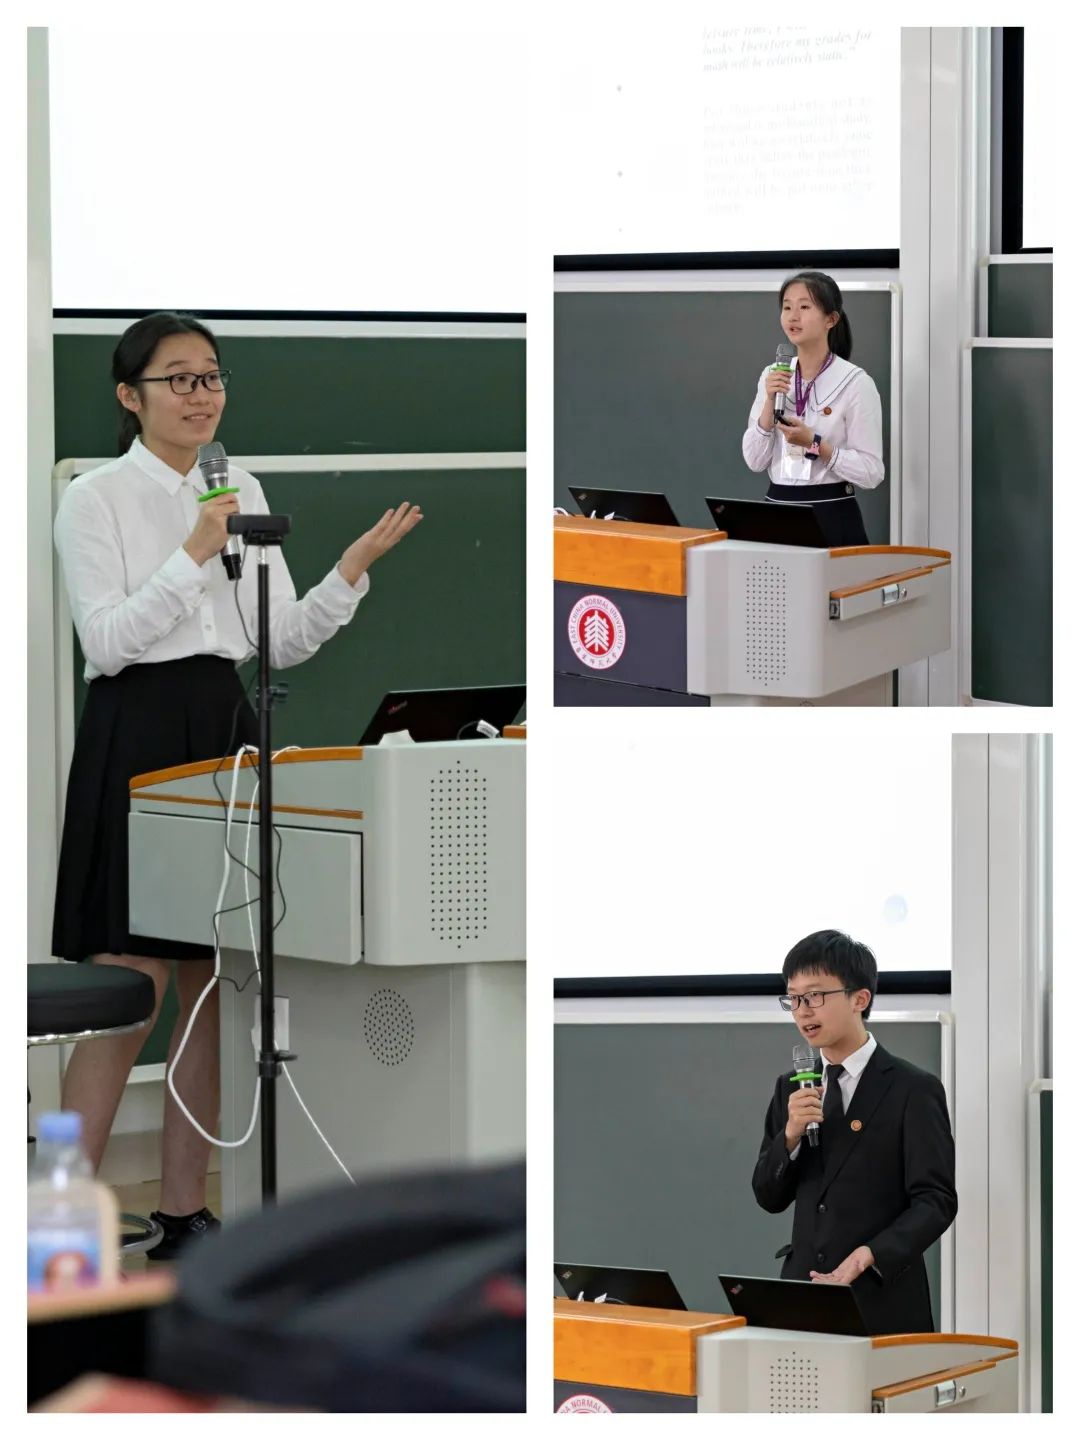 上海中学师生在第14届国际数学教育大会上进行专题发言